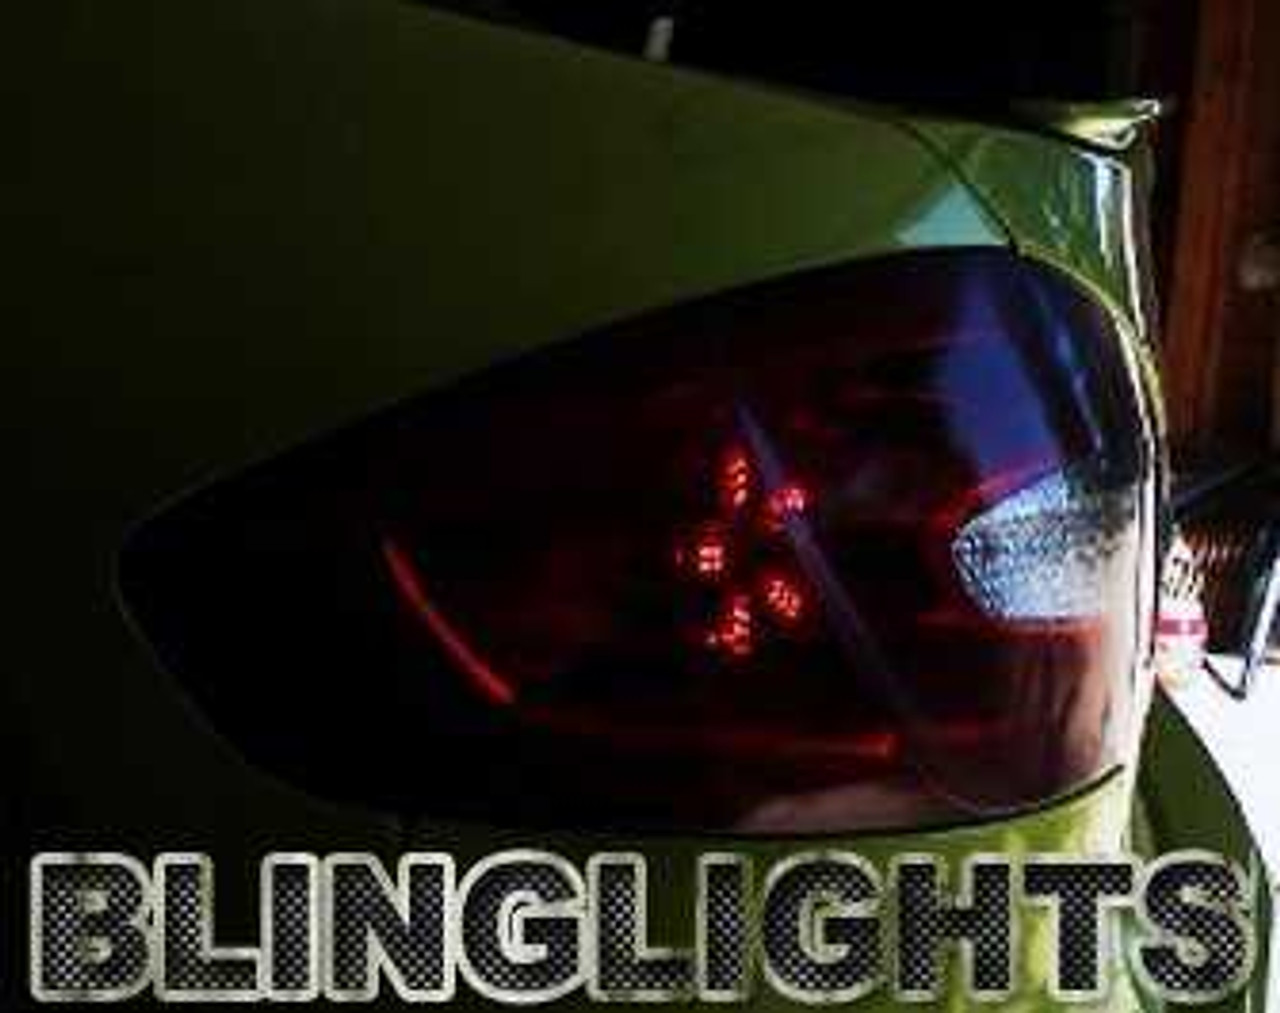 Ford Fiesta White LED Spider Tail Lamp Custom Light Bulbs